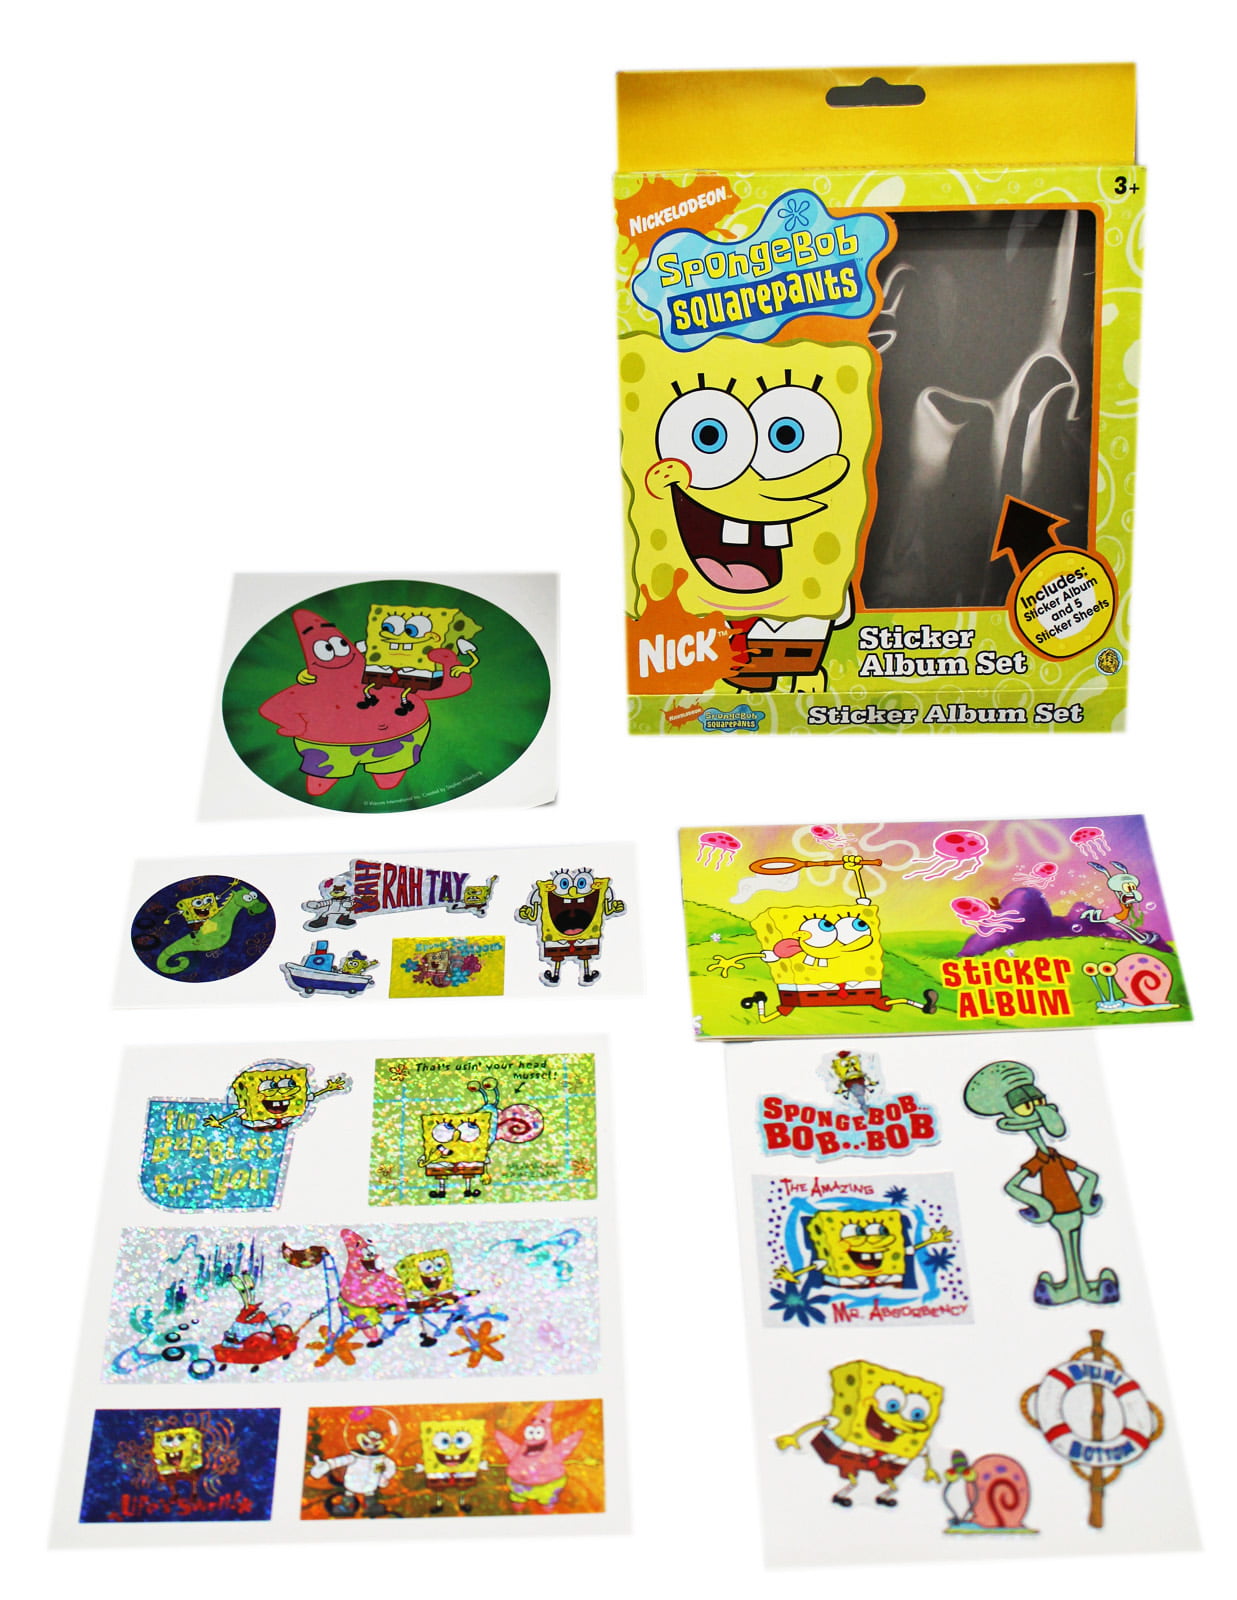 Mini Markers Spongebob Squarepants Colour Your Own Puzzle Set 45 Pieces 